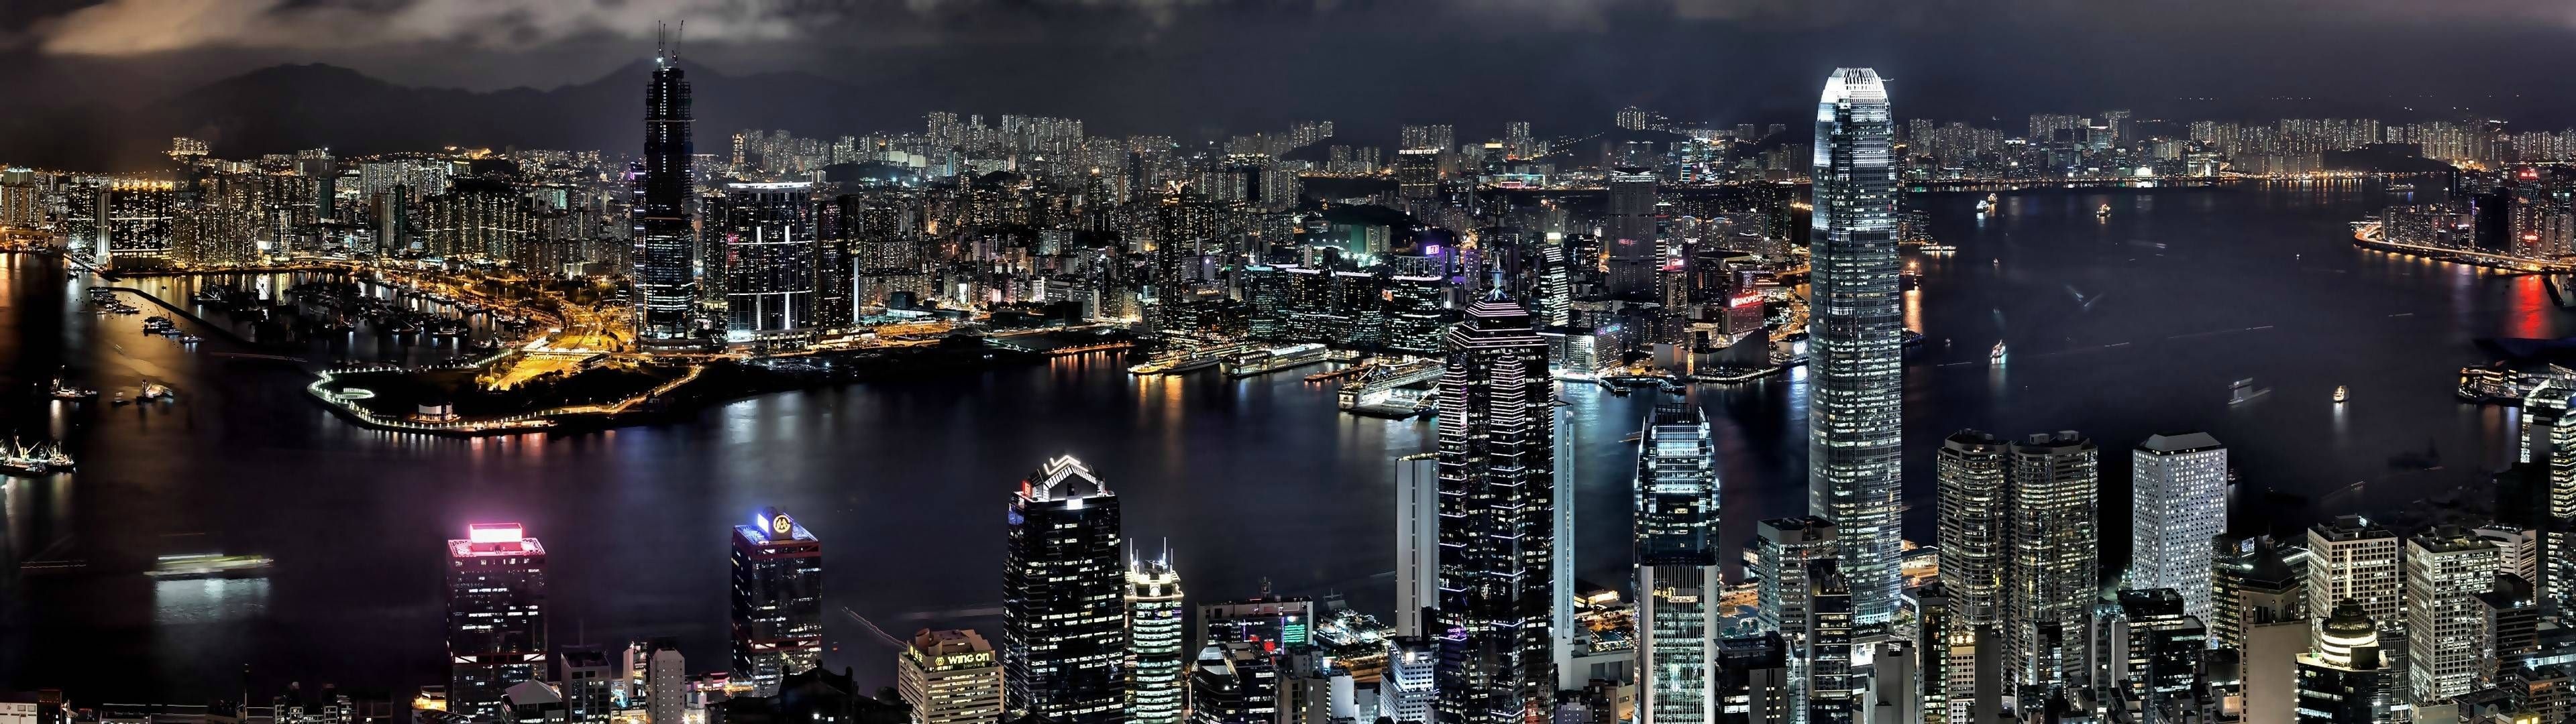 Hong Kong Skyline, Travel ideas, Asian cityscape, Urban views, 3840x1080 Dual Screen Desktop